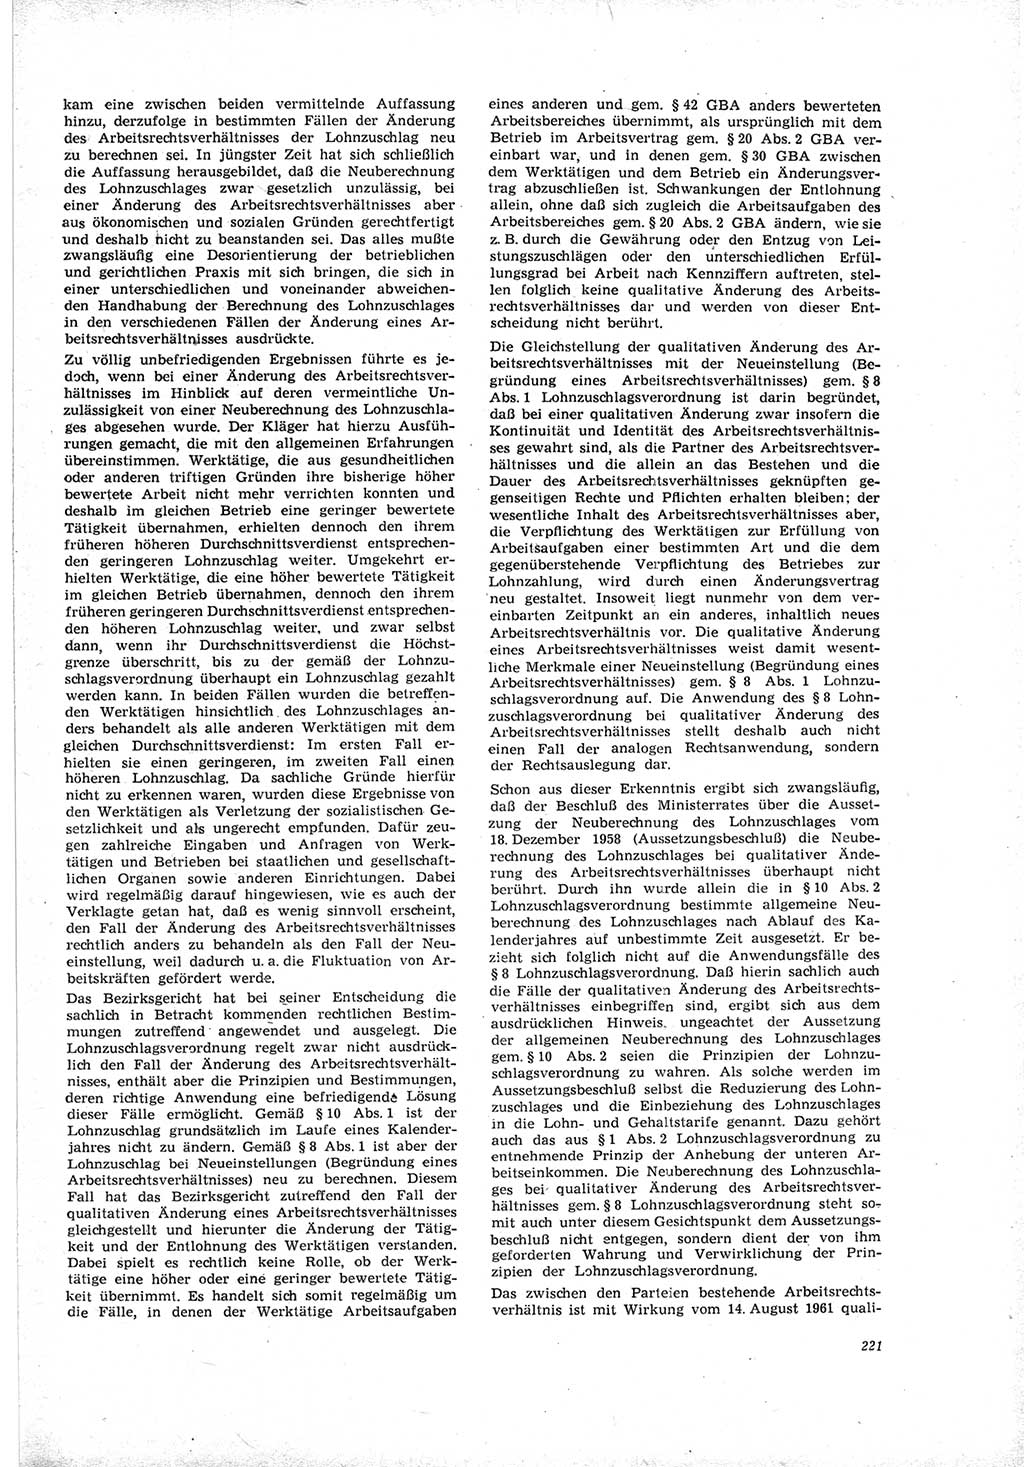 Neue Justiz (NJ), Zeitschrift für Recht und Rechtswissenschaft [Deutsche Demokratische Republik (DDR)], 19. Jahrgang 1965, Seite 221 (NJ DDR 1965, S. 221)